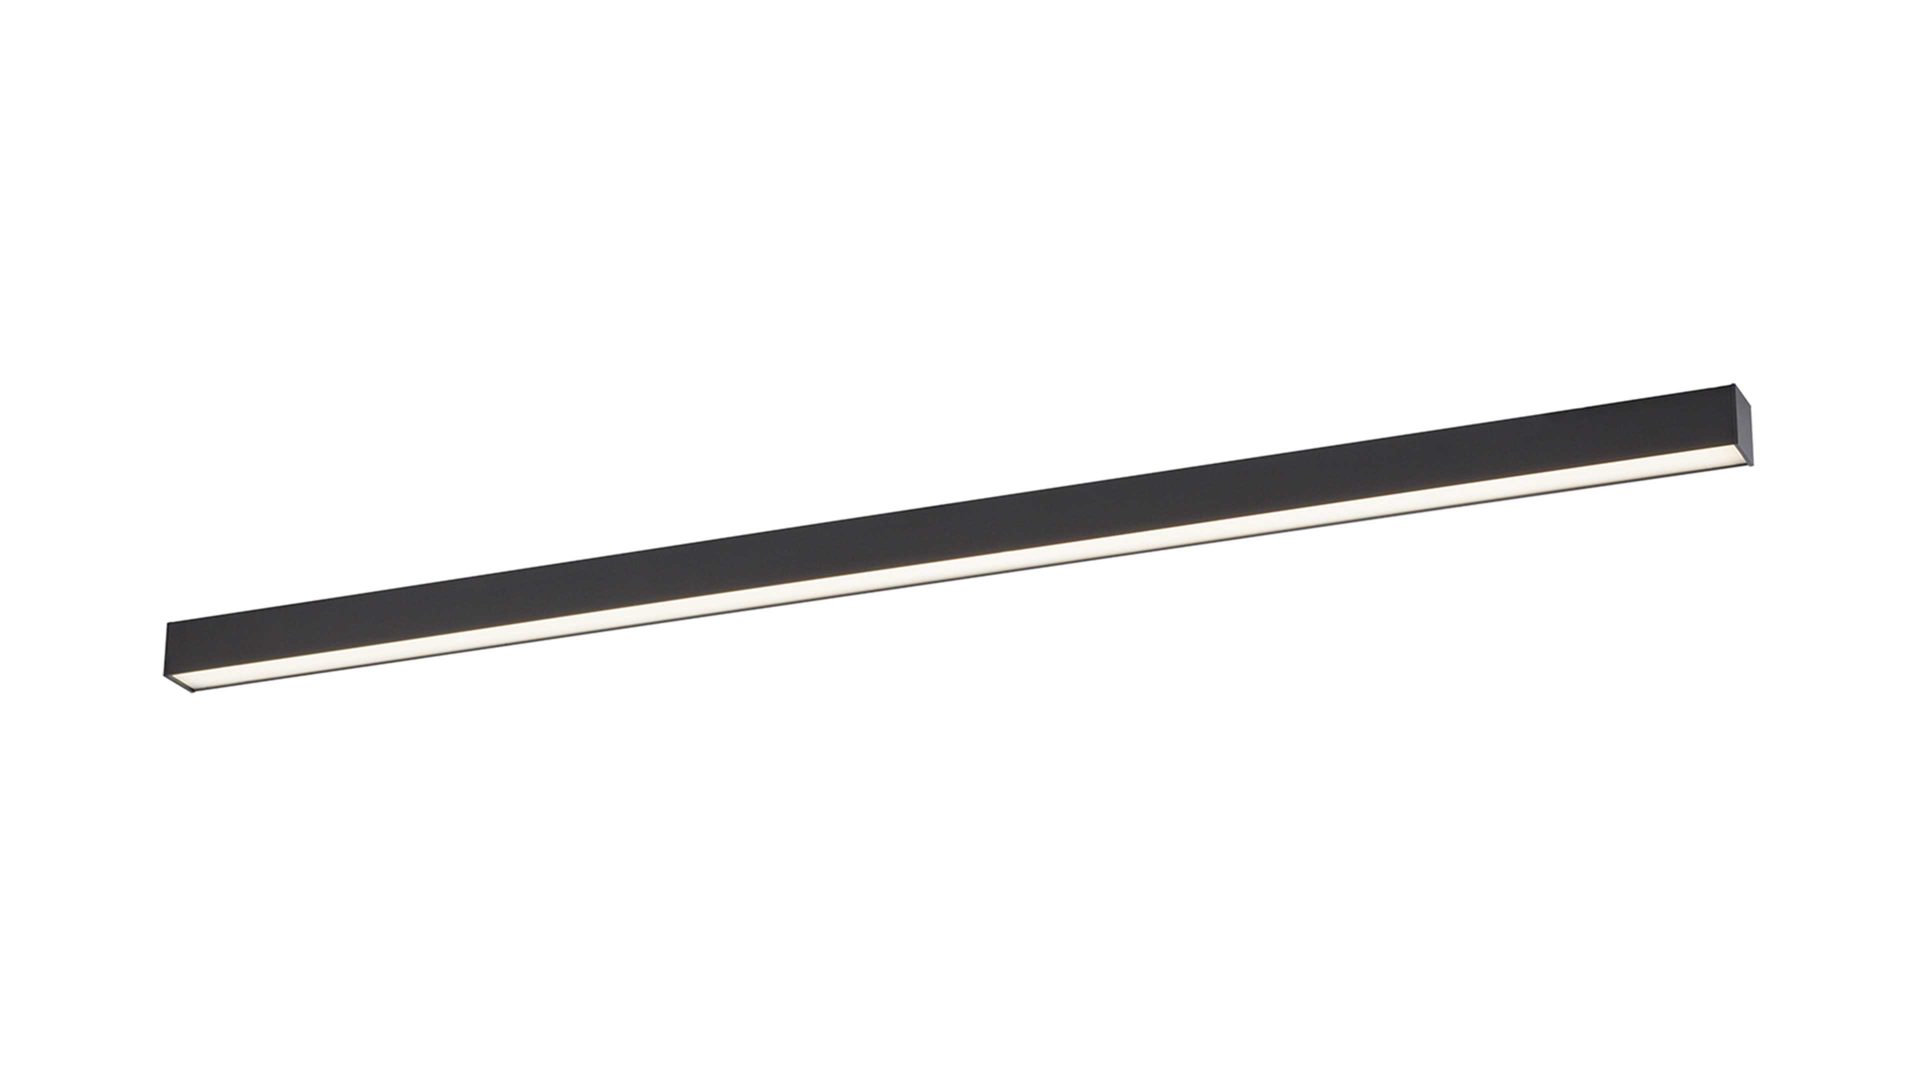 Deckenleuchte Paul neuhaus aus Metall in Anthrazit NeuhausPURE® Leuchten Serie Lines - Deckenlampe anthrazitfarbenes Metall - Länge ca. 110 cm